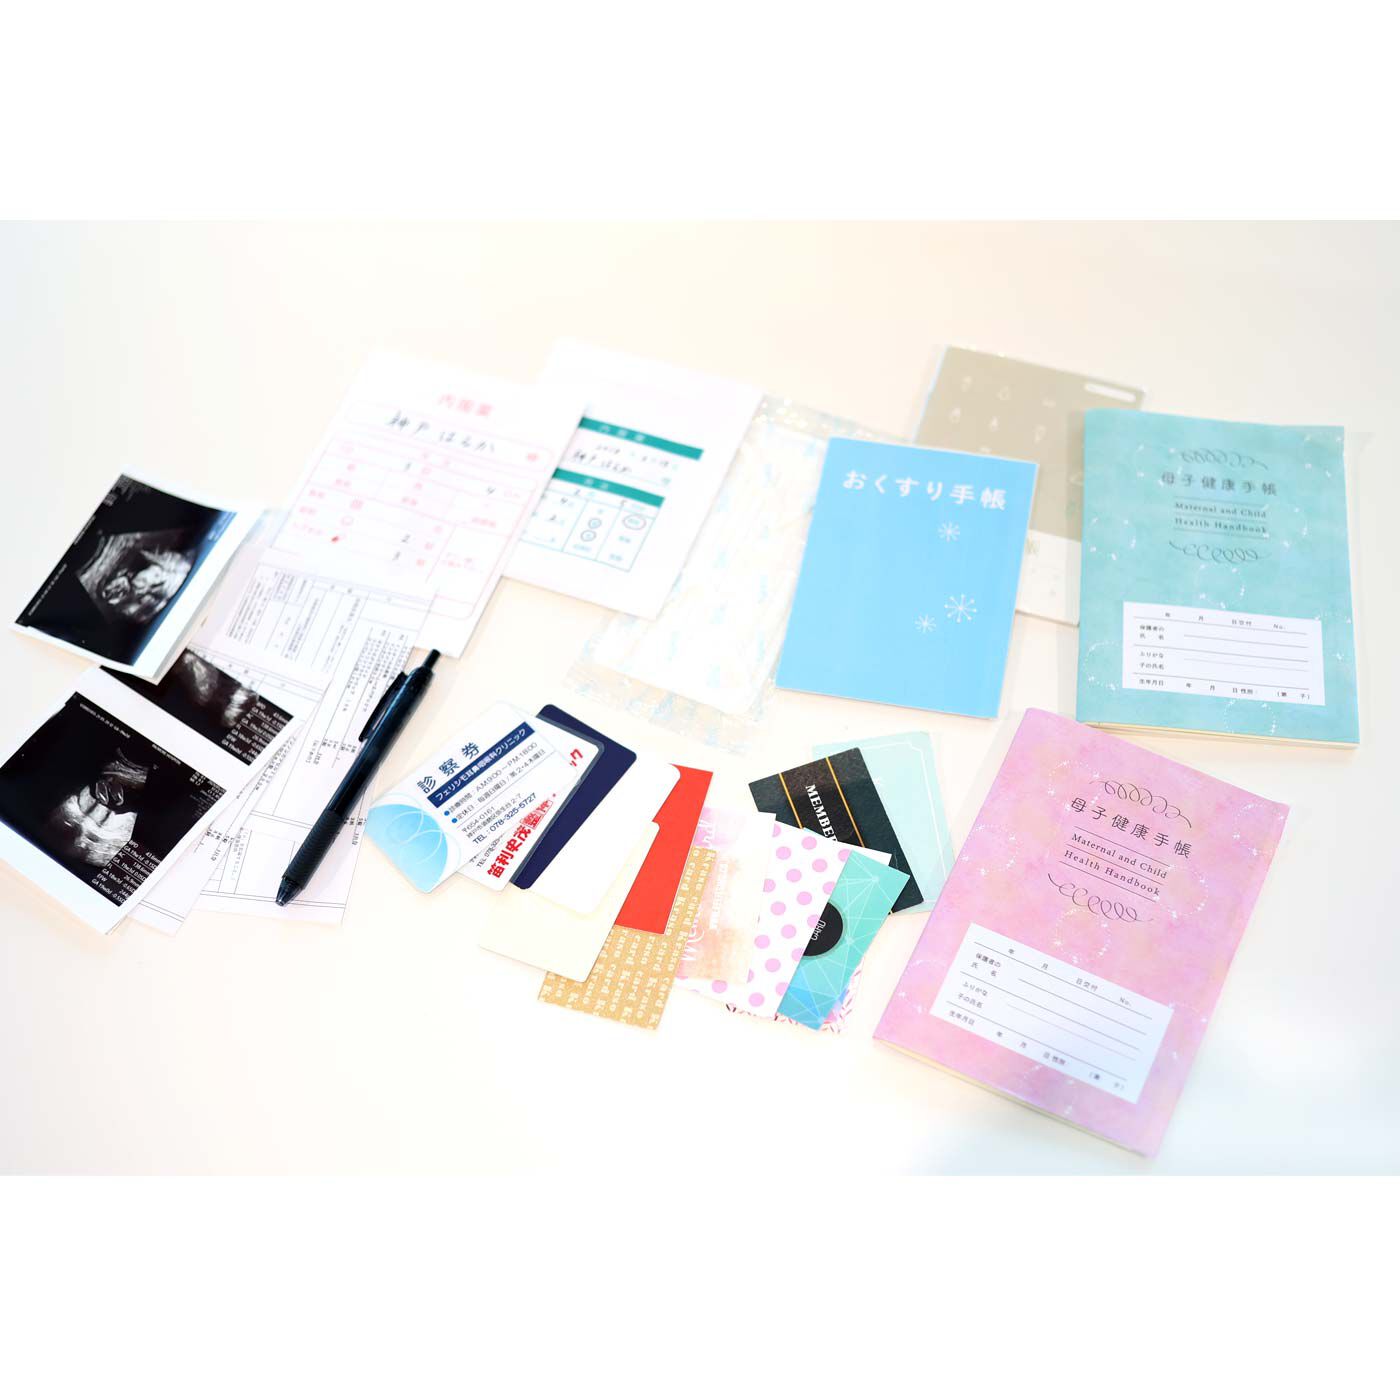 フェリシモMama|Moredde　ジャバラポケットで仕分け上手　軽くてスリムな母子手帳ケース〈ブルー〉|2人分のお薬手帳と母子手帳、診察券がしっかり収納できます。